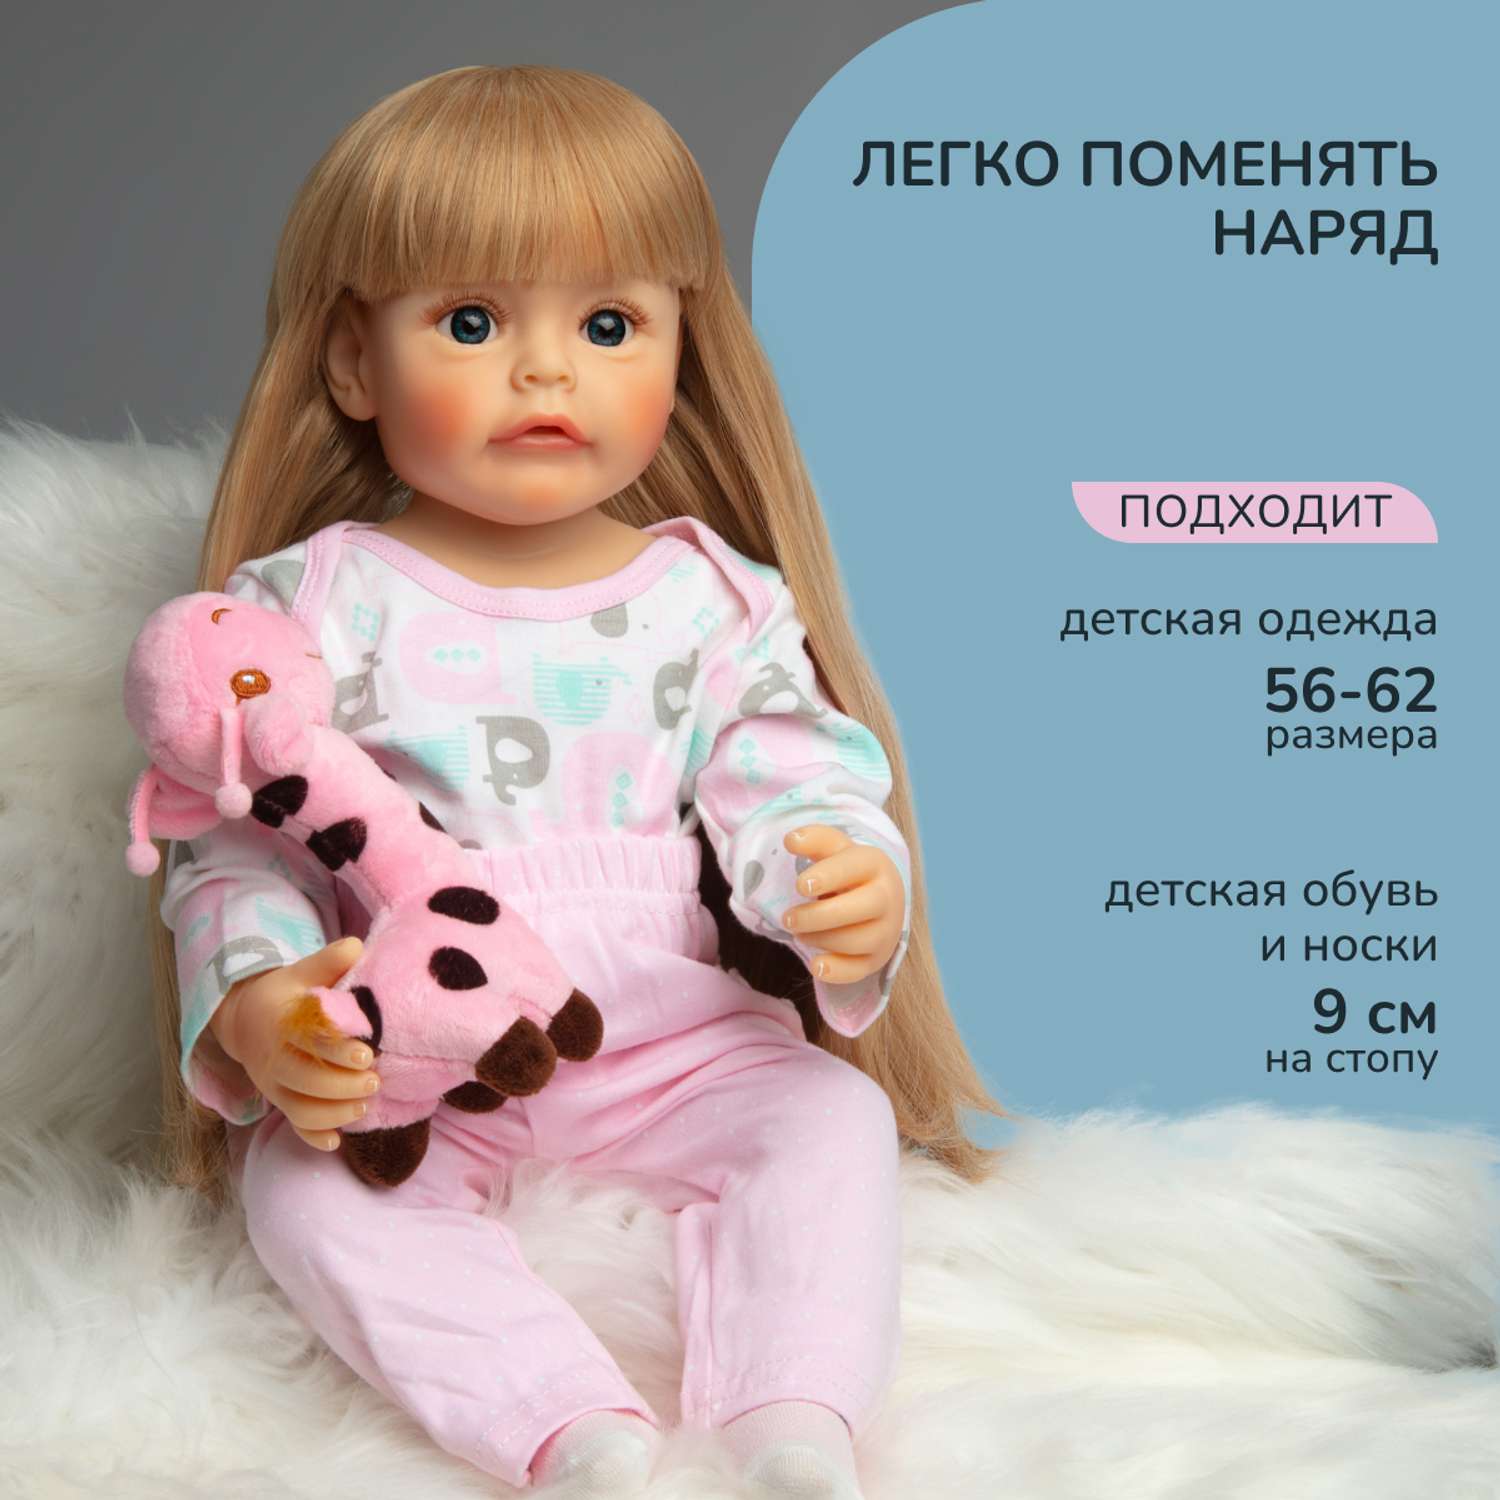 Кукла Реборн QA BABY Ева девочка большая пупс набор игрушки для девочки 55 см 5506 - фото 10